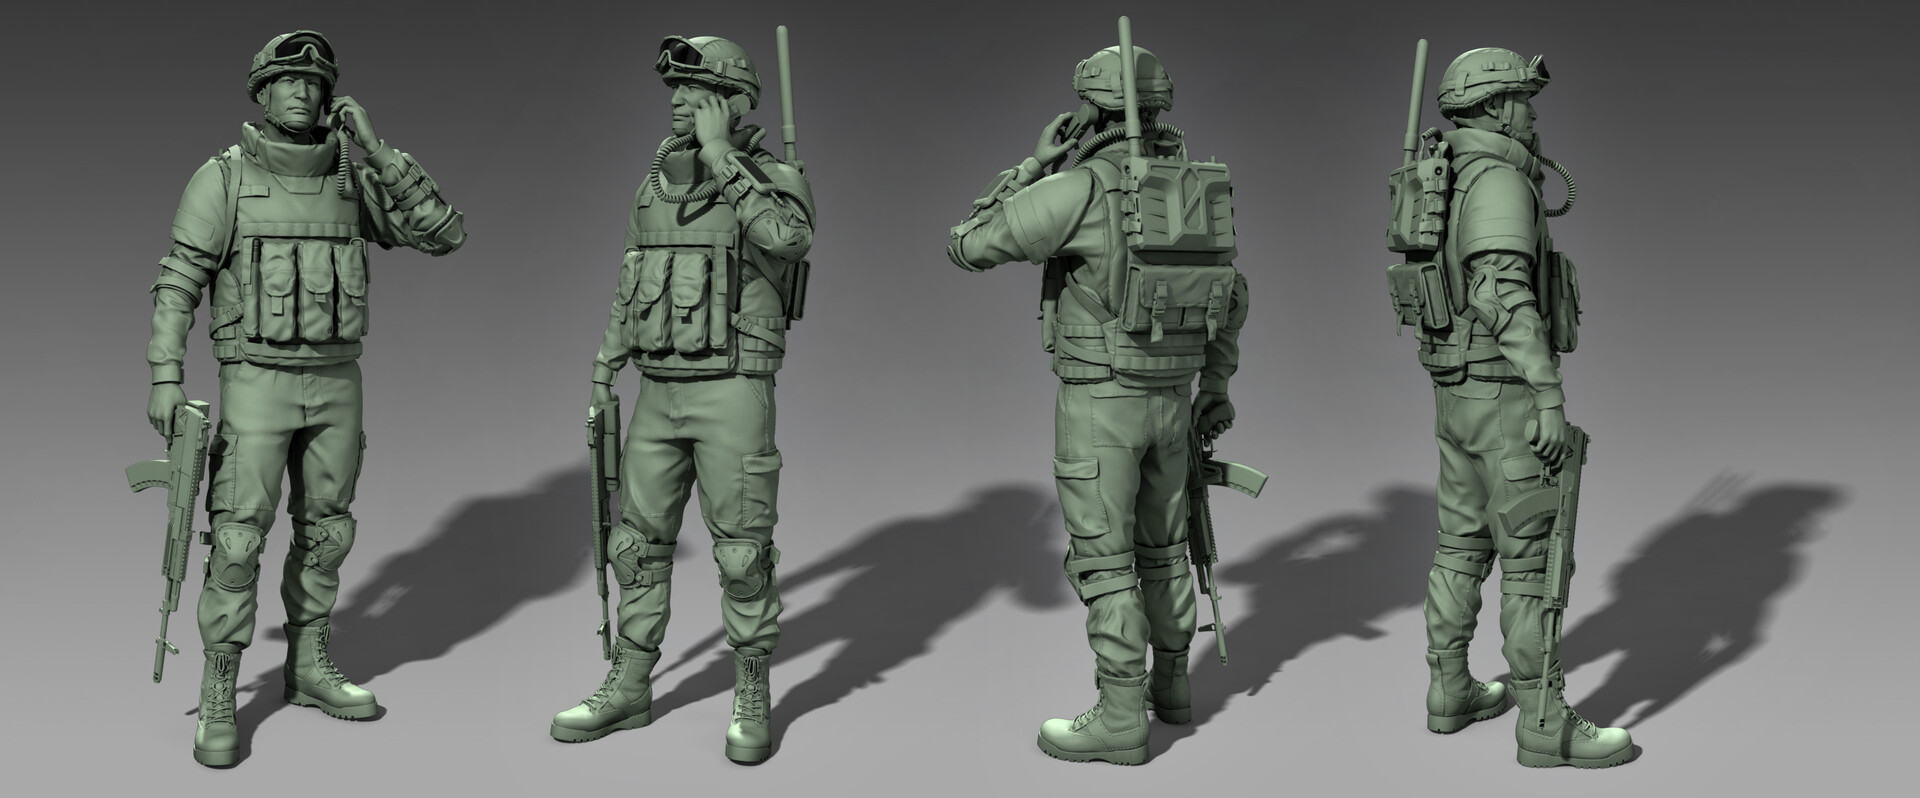 Модель русски 3. Модель солдата. 3д модель российского солдата. Солдатики 3d. Фигурки для моделирования.